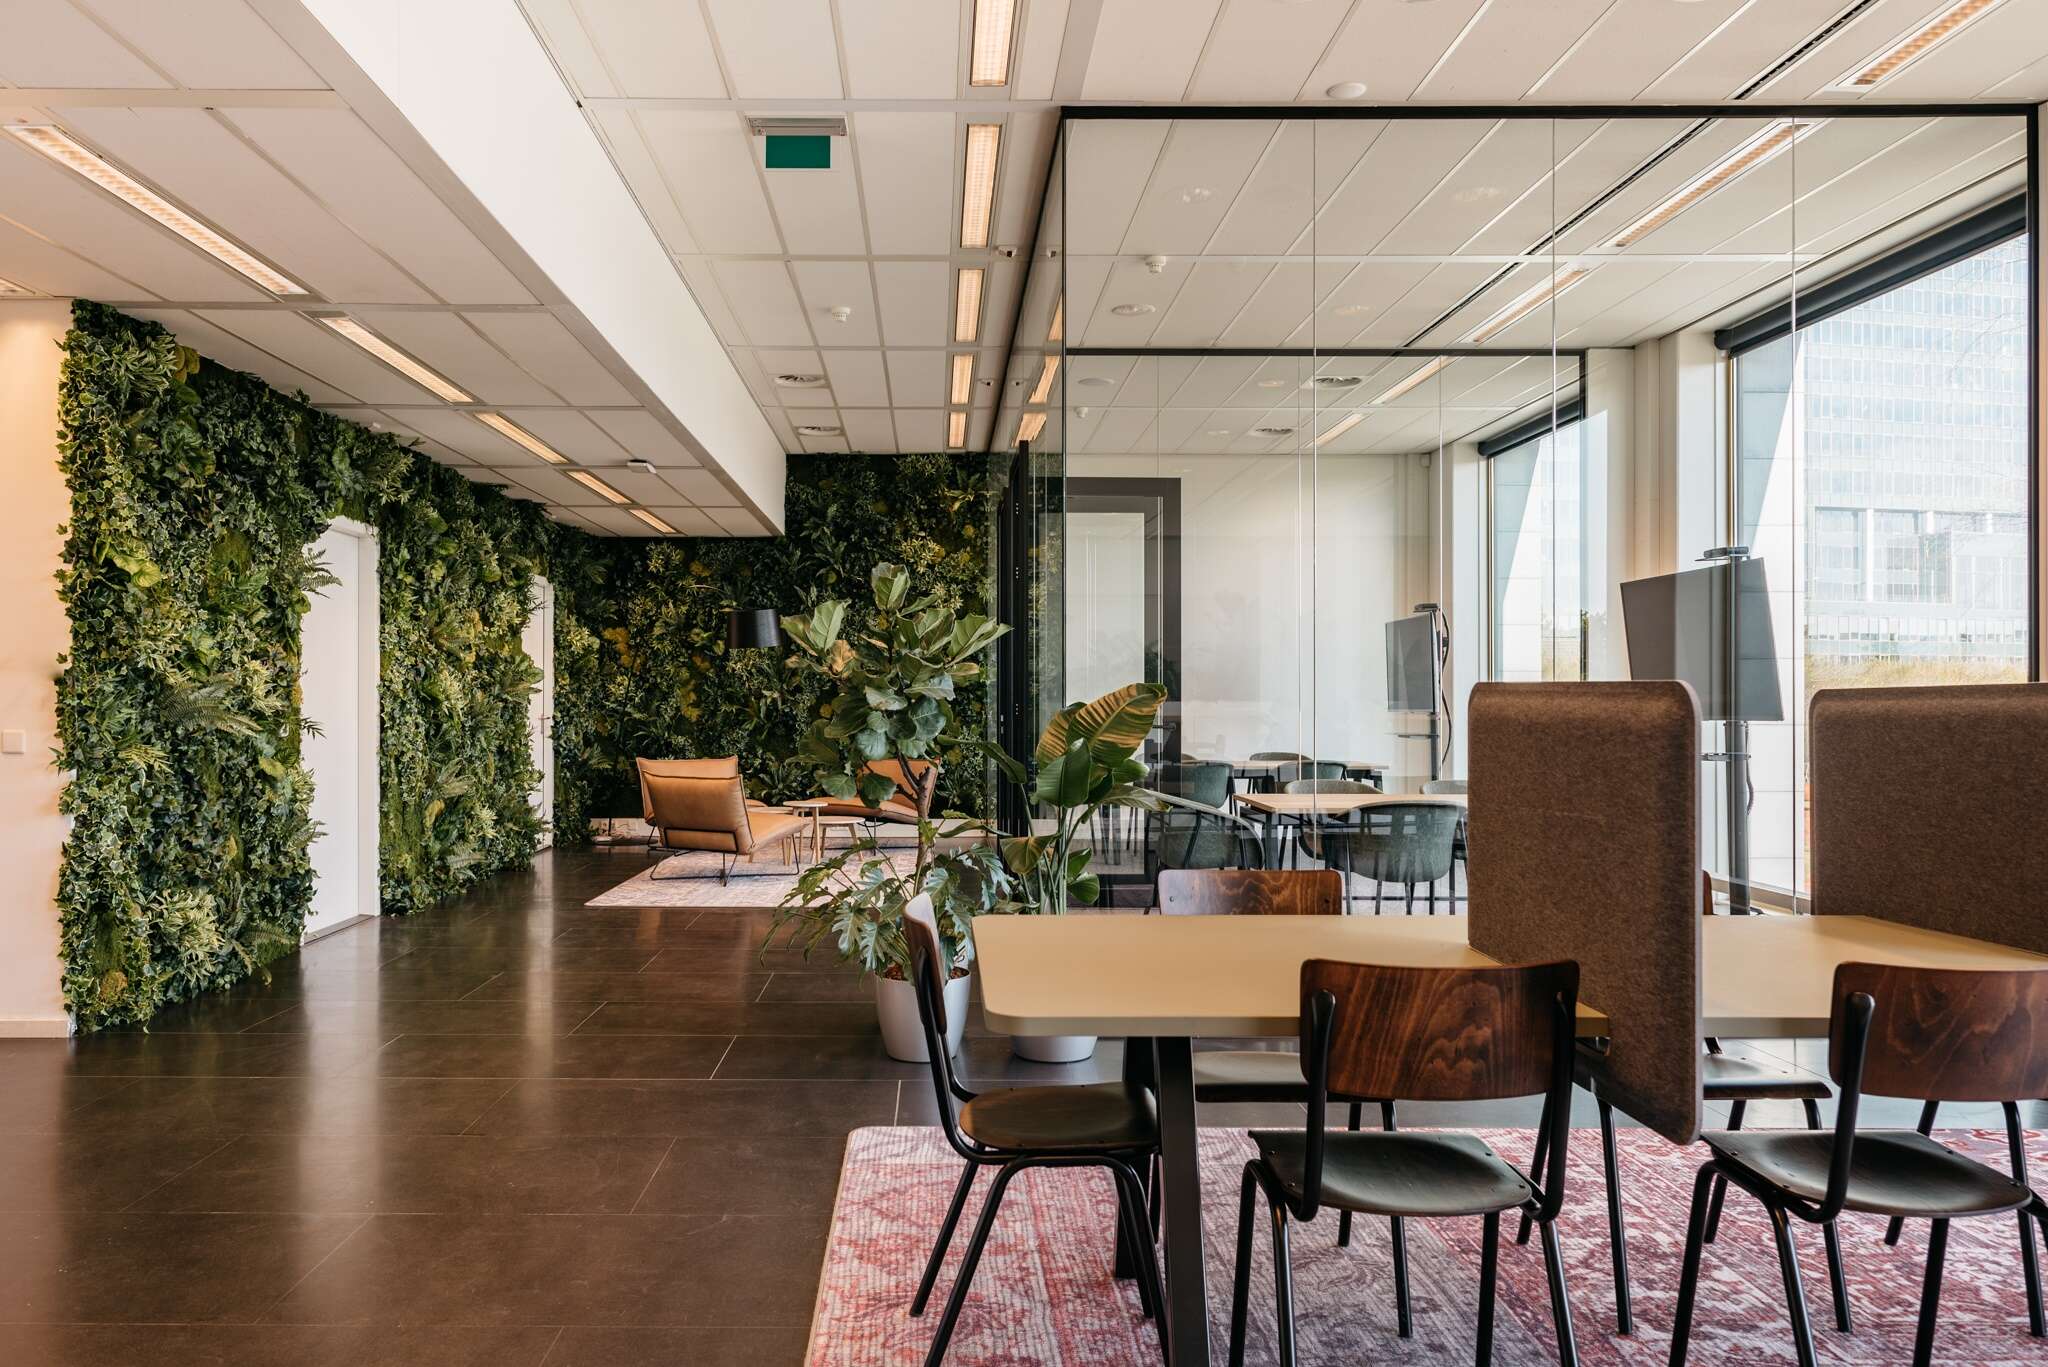 Espace d'accueil convivial et accessible avec des salles de réunion et de travail dans le bâtiment Trinity à Rotterdam, aux Pays-Bas.